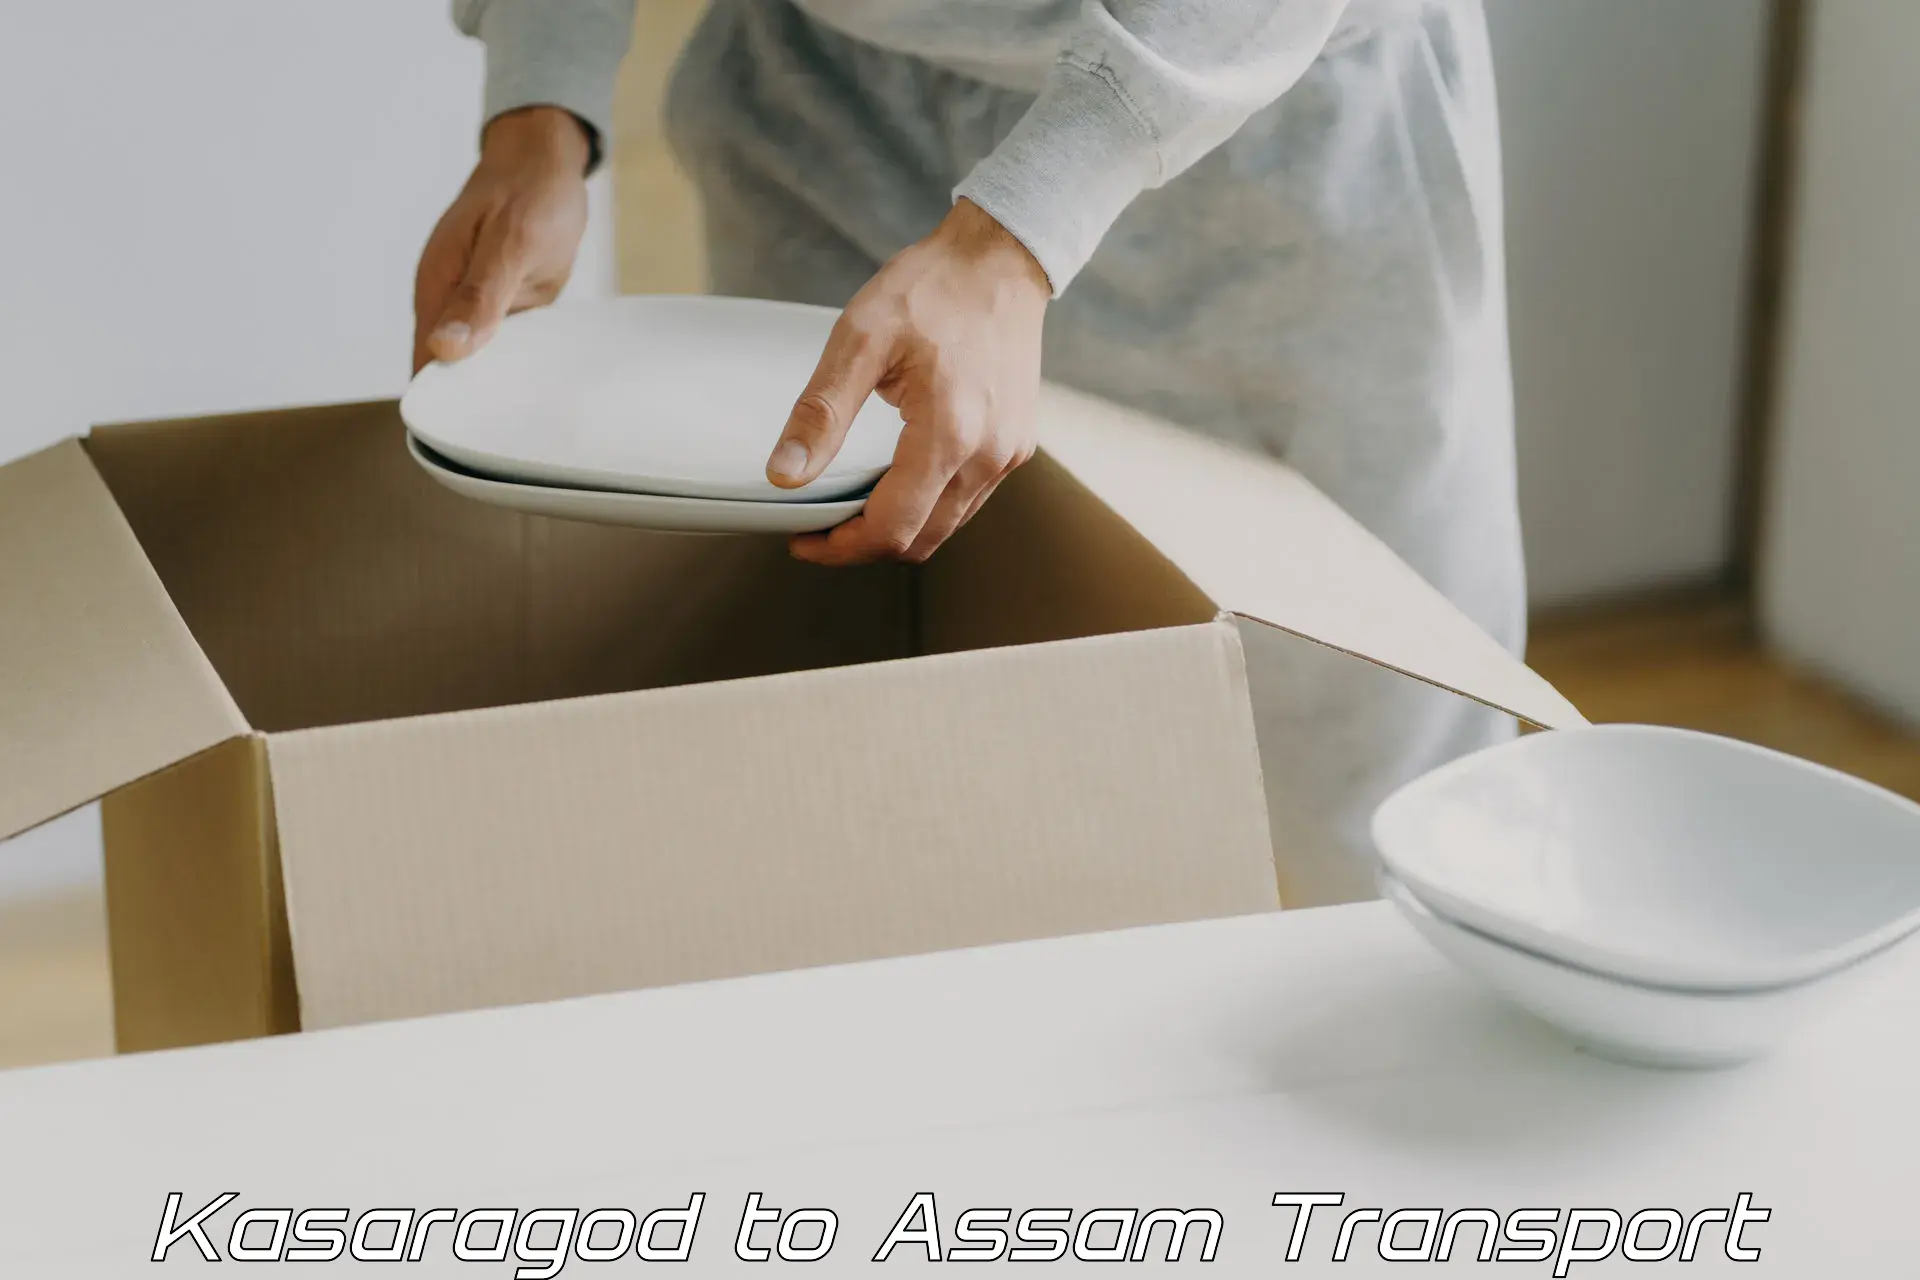 International cargo transportation services Kasaragod to Assam